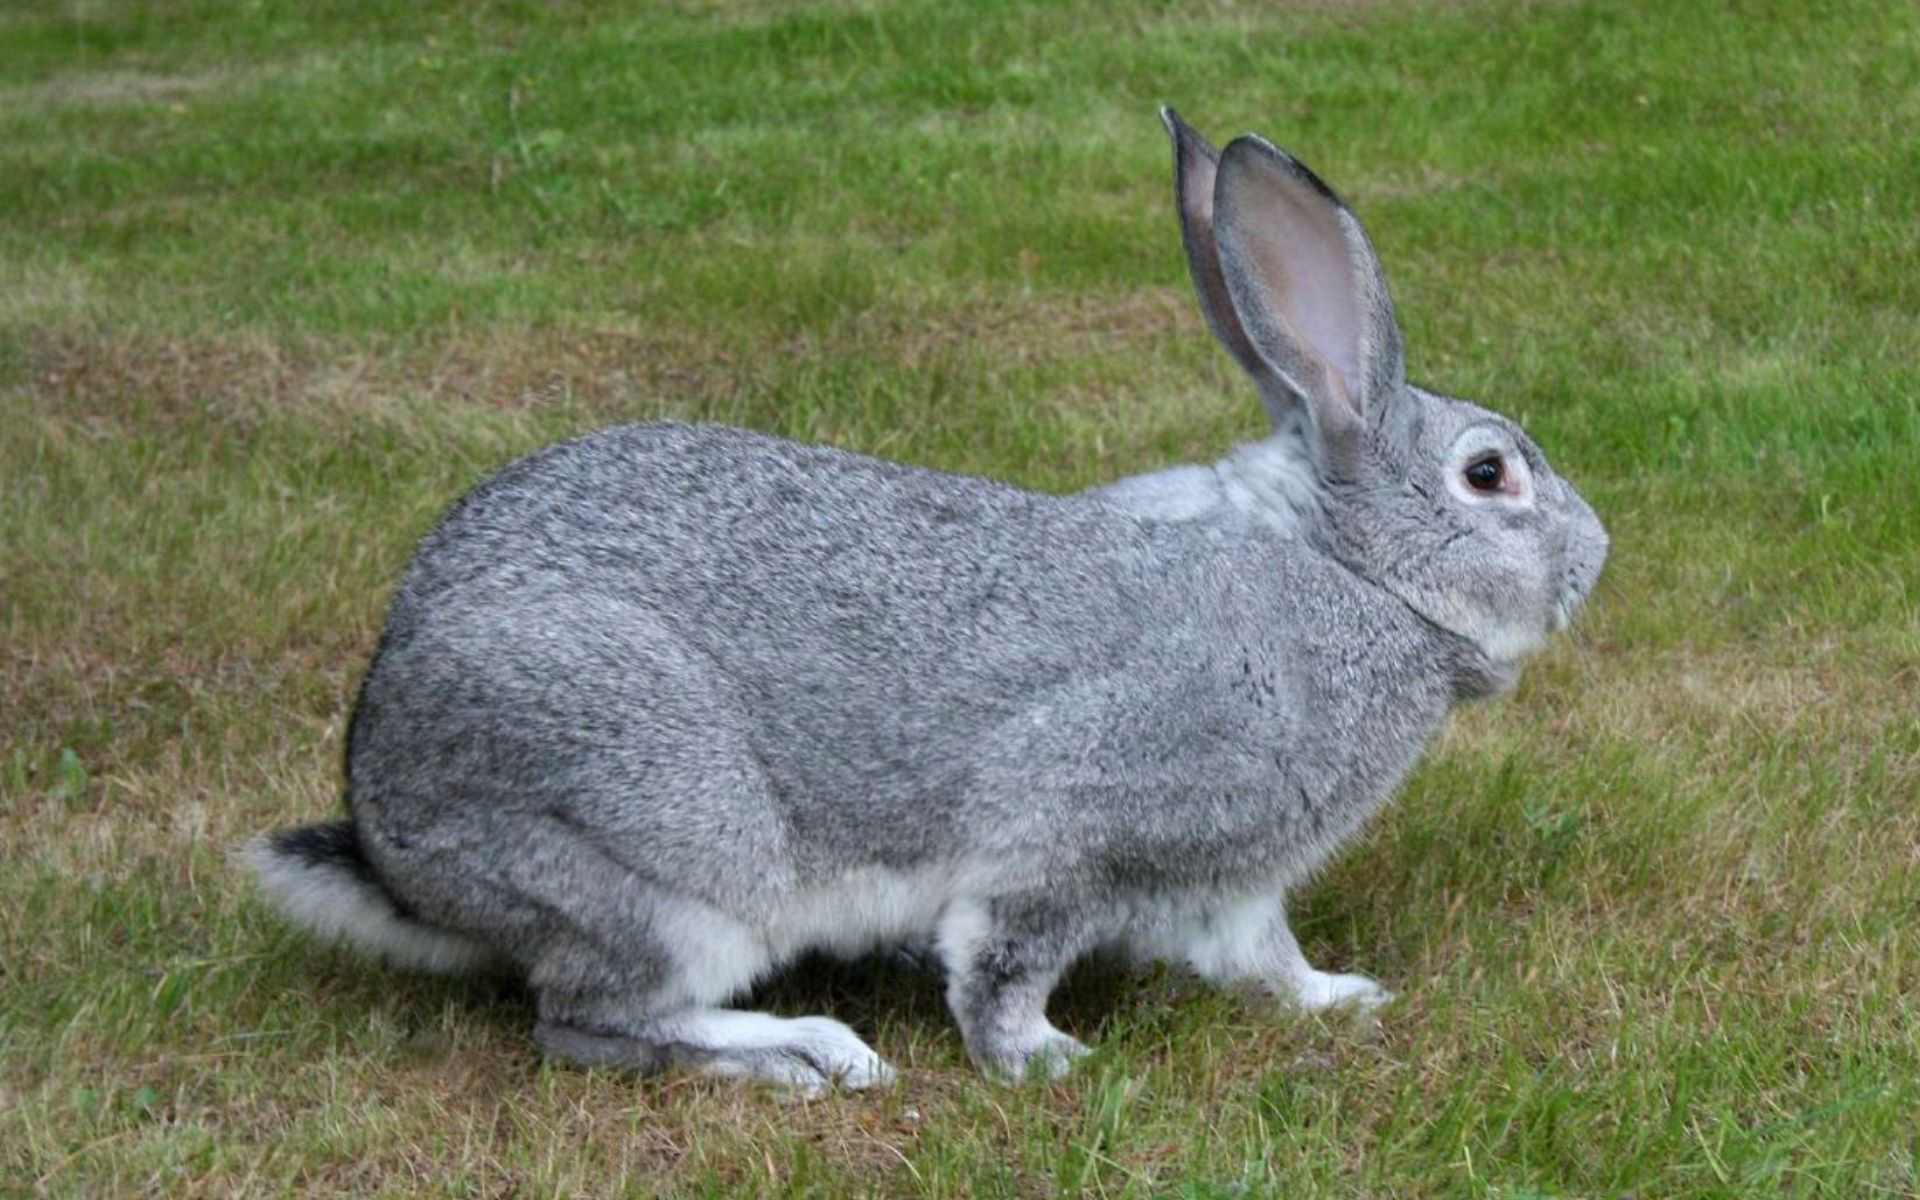 Советская шиншилла порода кроликов